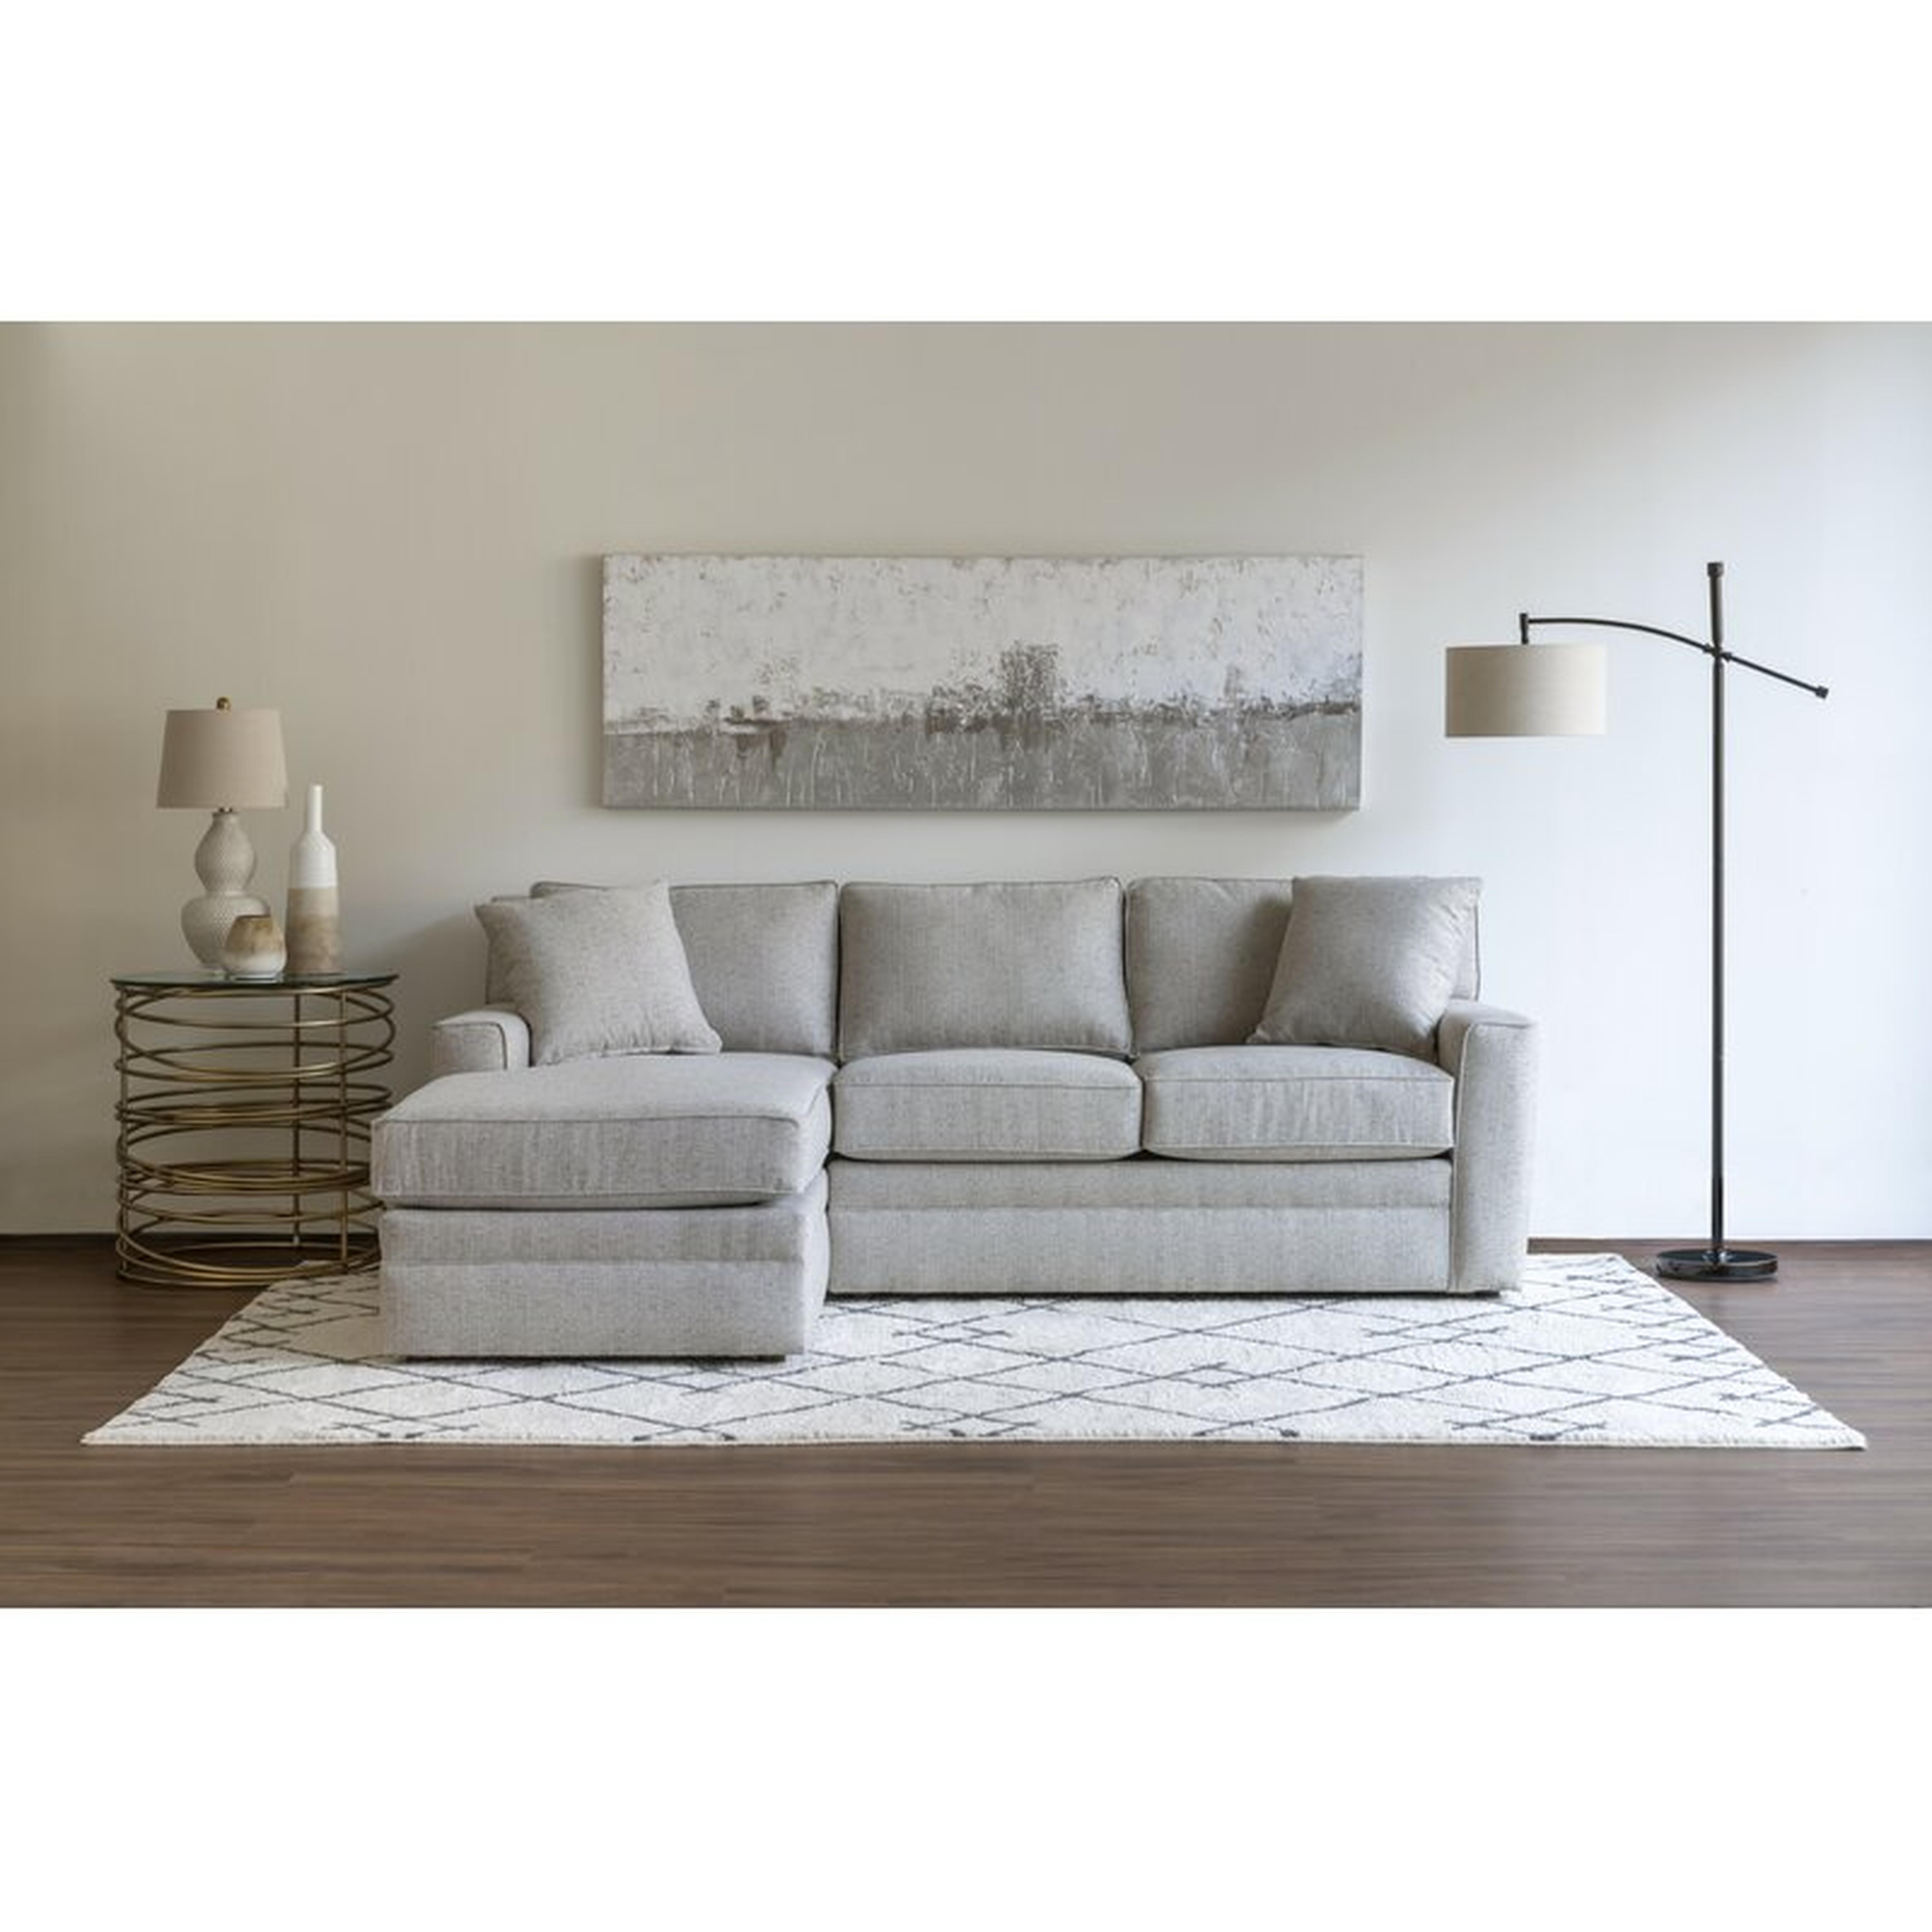 Stone & Leigh Furniture Riley 93" Left Hand Facing Modular Sectional Fabric: Light Gray - Perigold